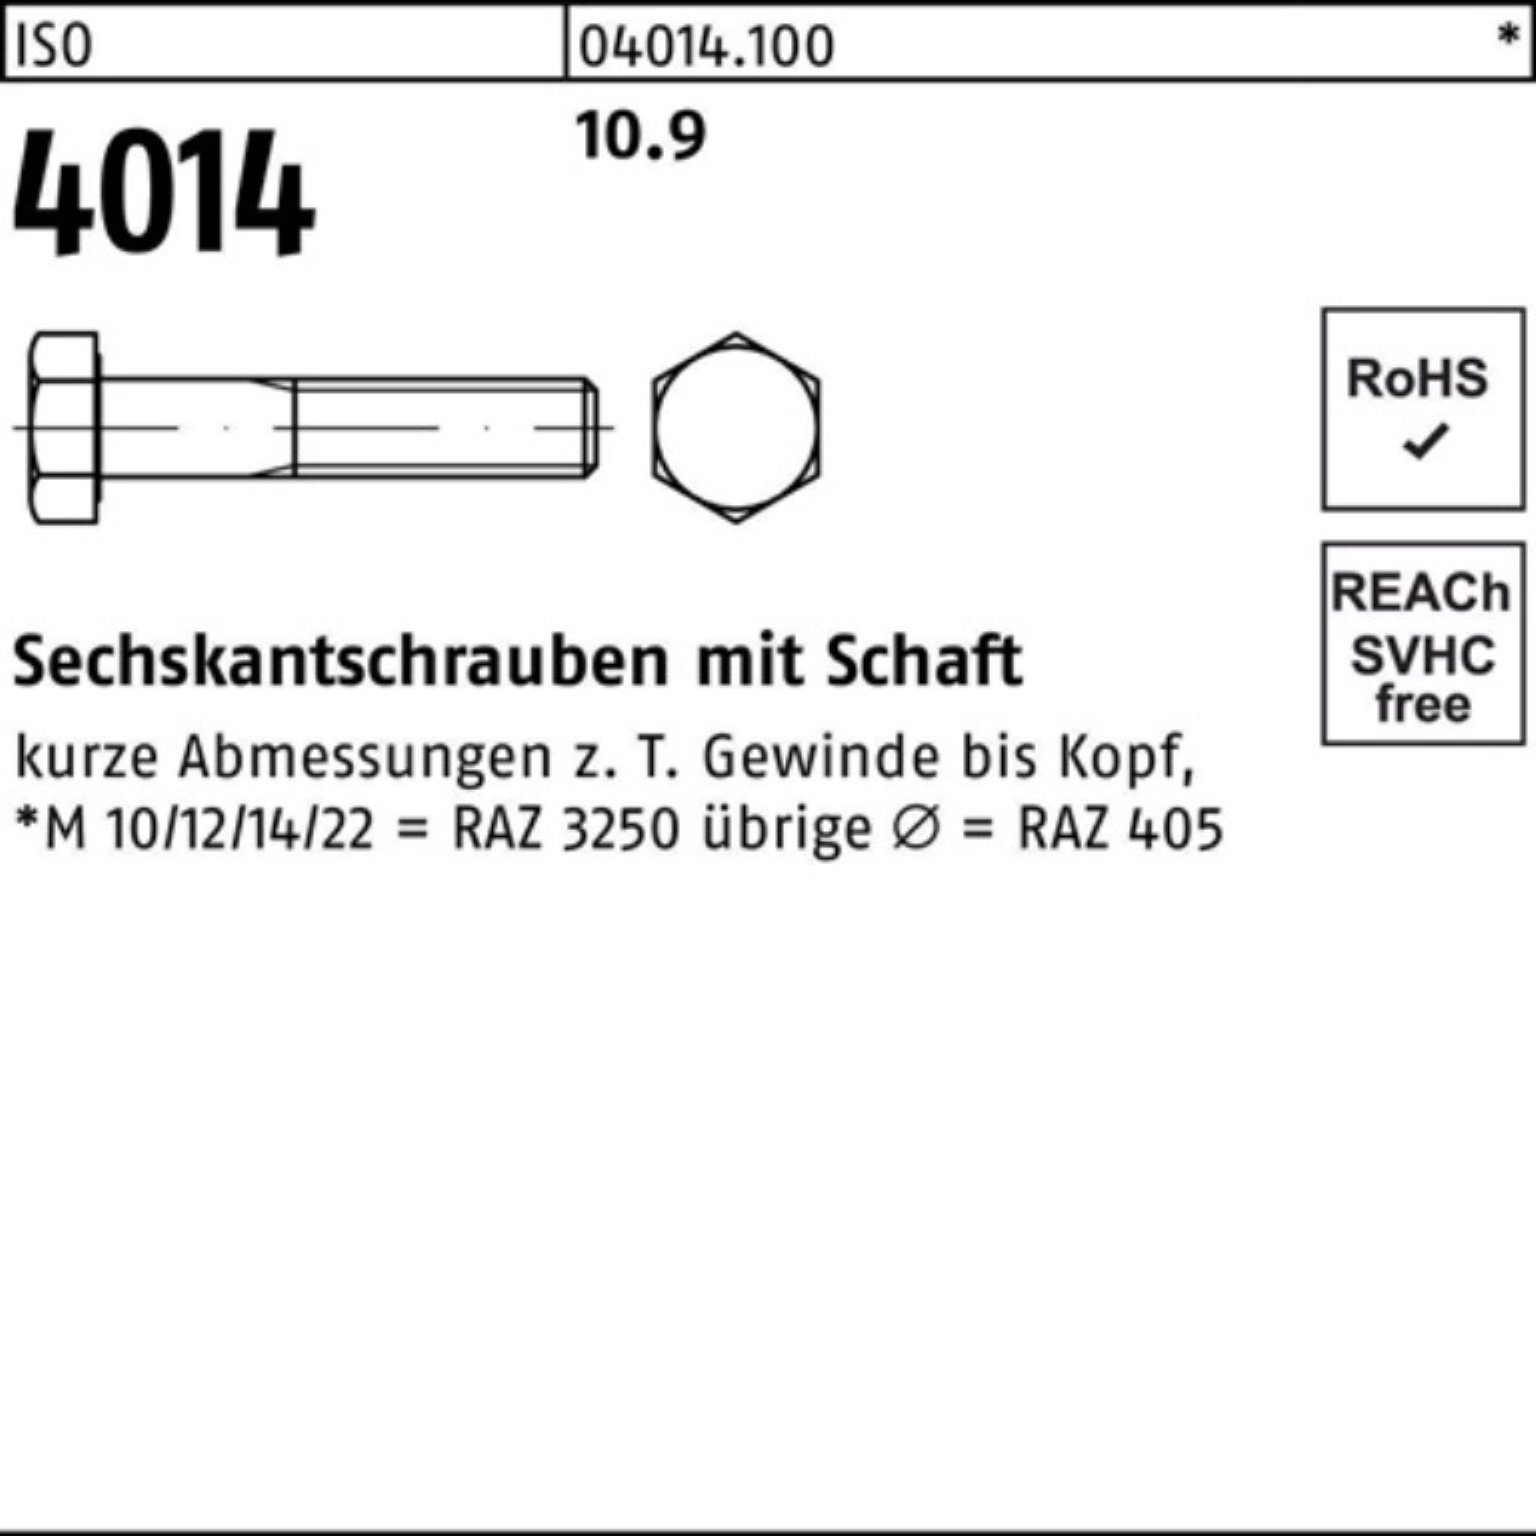 Bufab Sechskantschraube 100er Pack Schaft I 4014 Sechskantschraube 10 Stück ISO 10.9 170 M22x